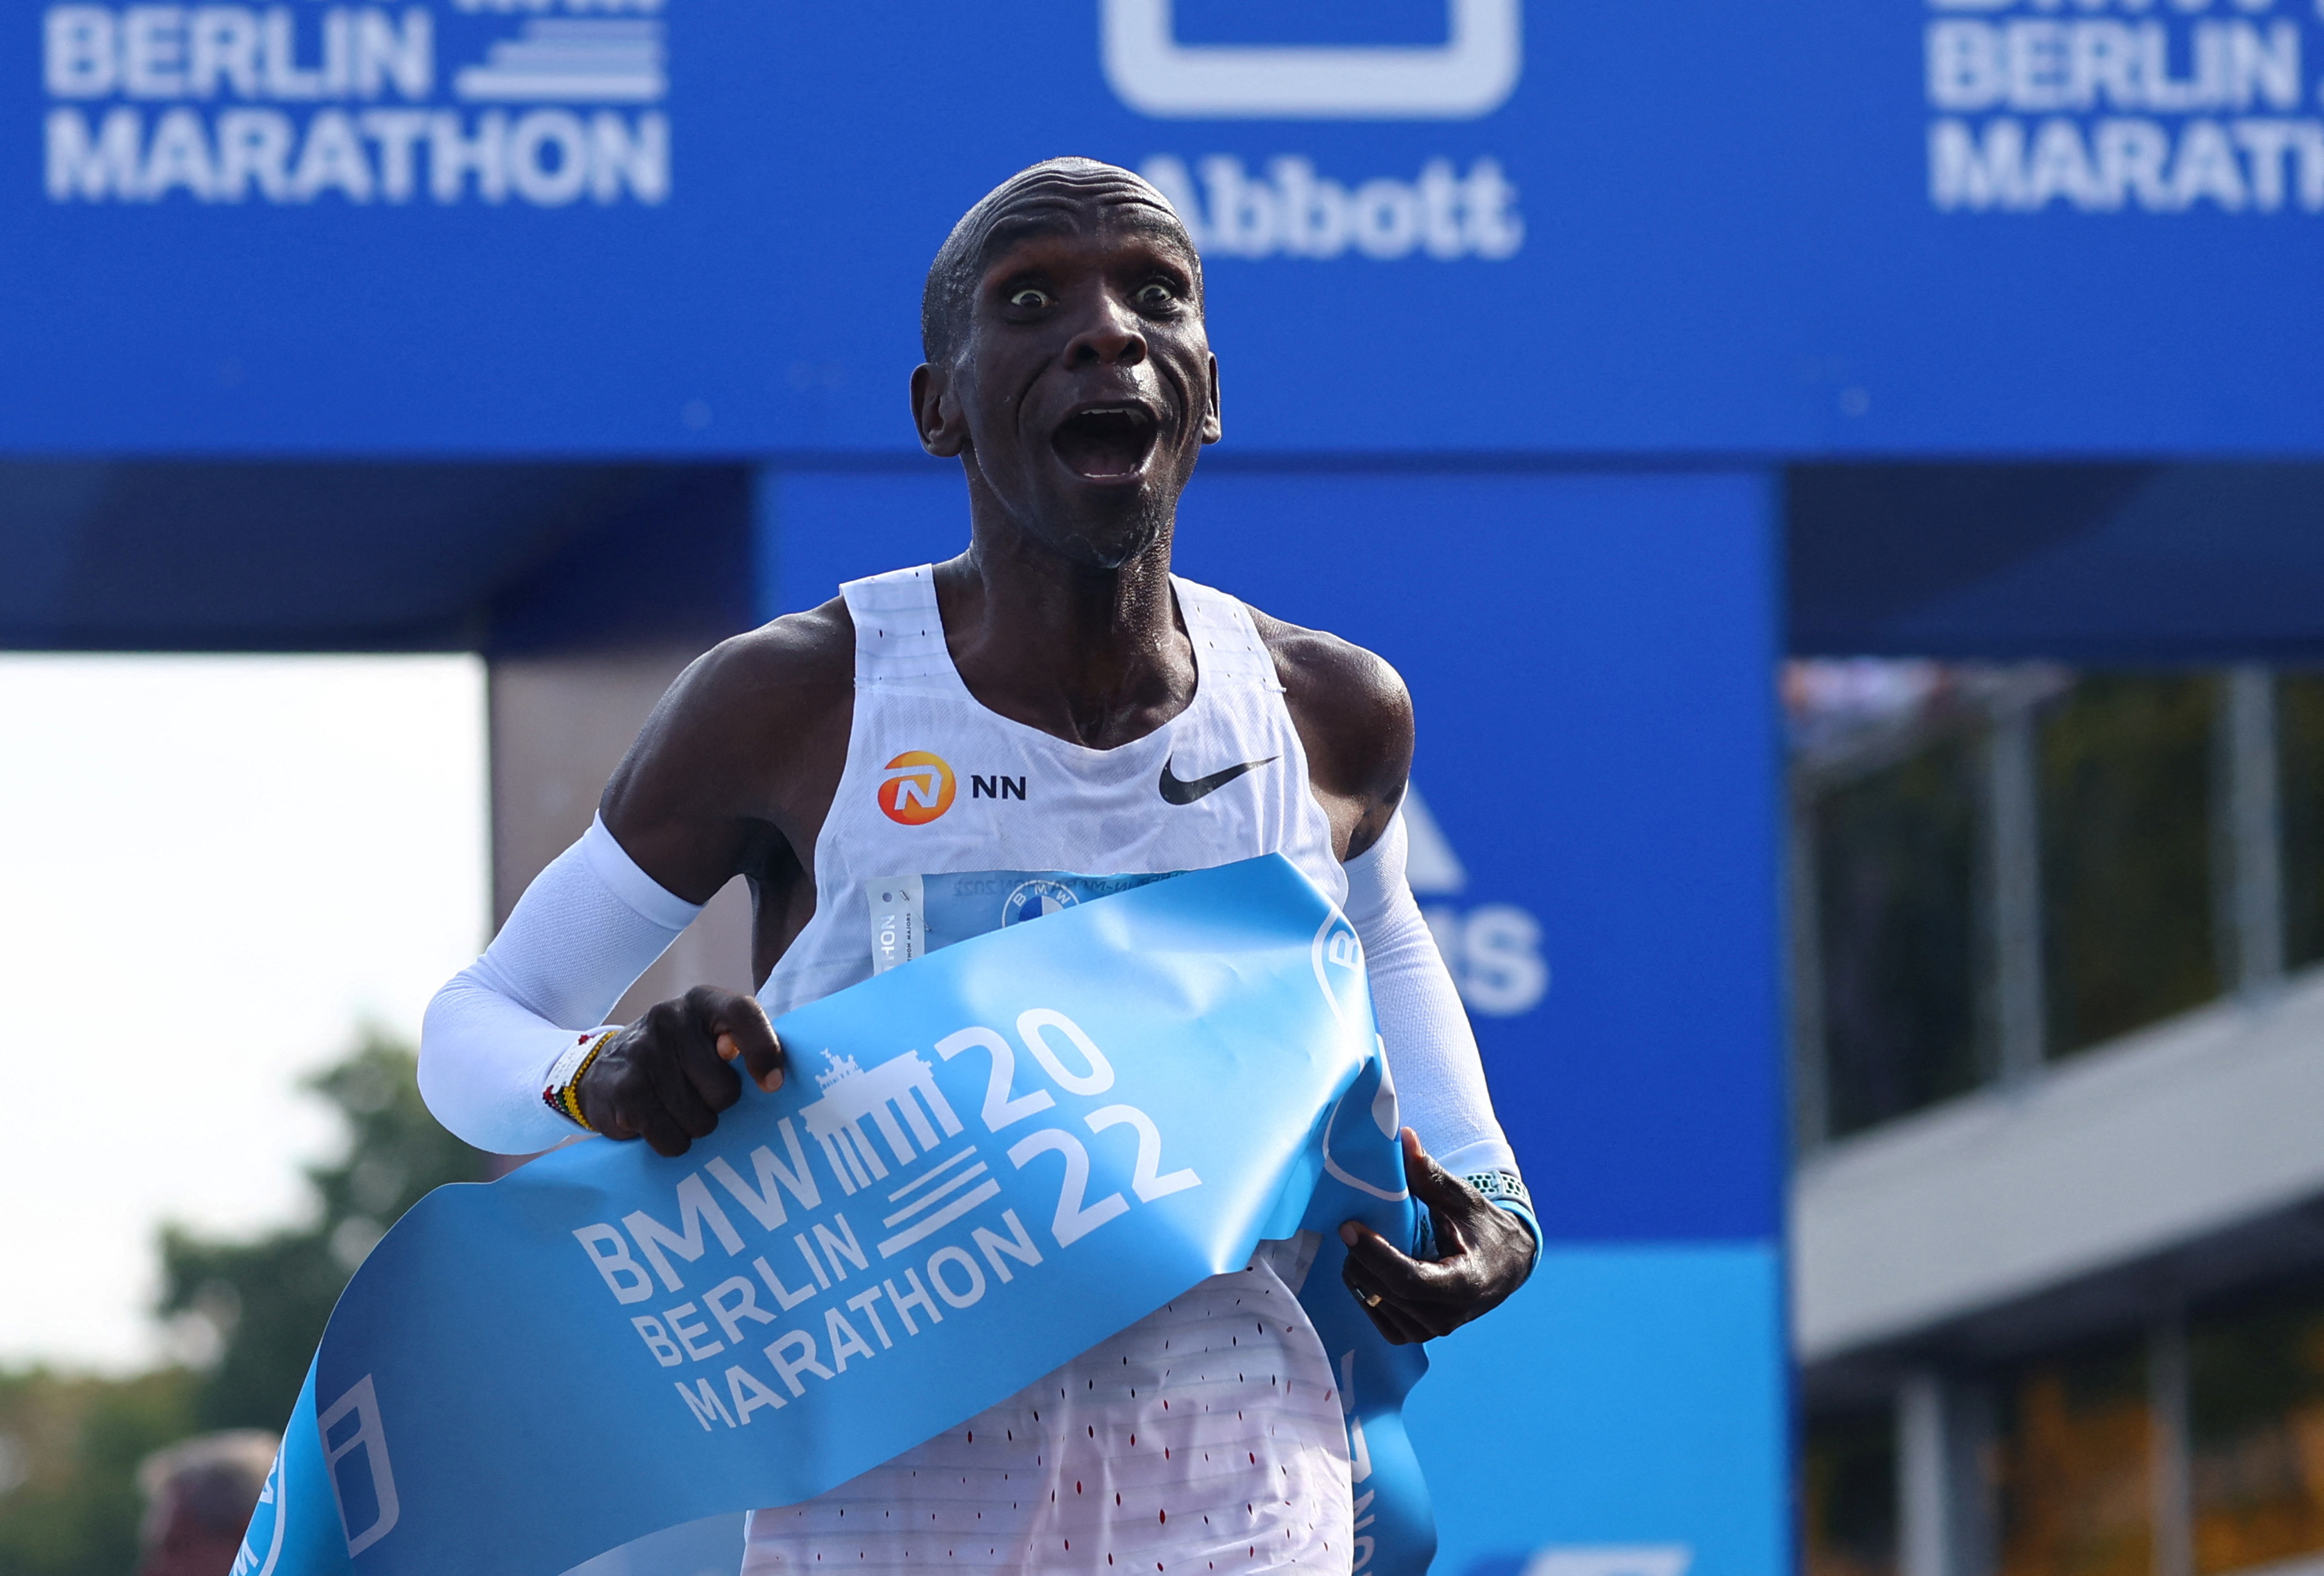 Eliud Kipchoge conquistó el primer puesto en 15 maratones de los 17 en los que participó (REUTERS/Fabrizio Bensch)